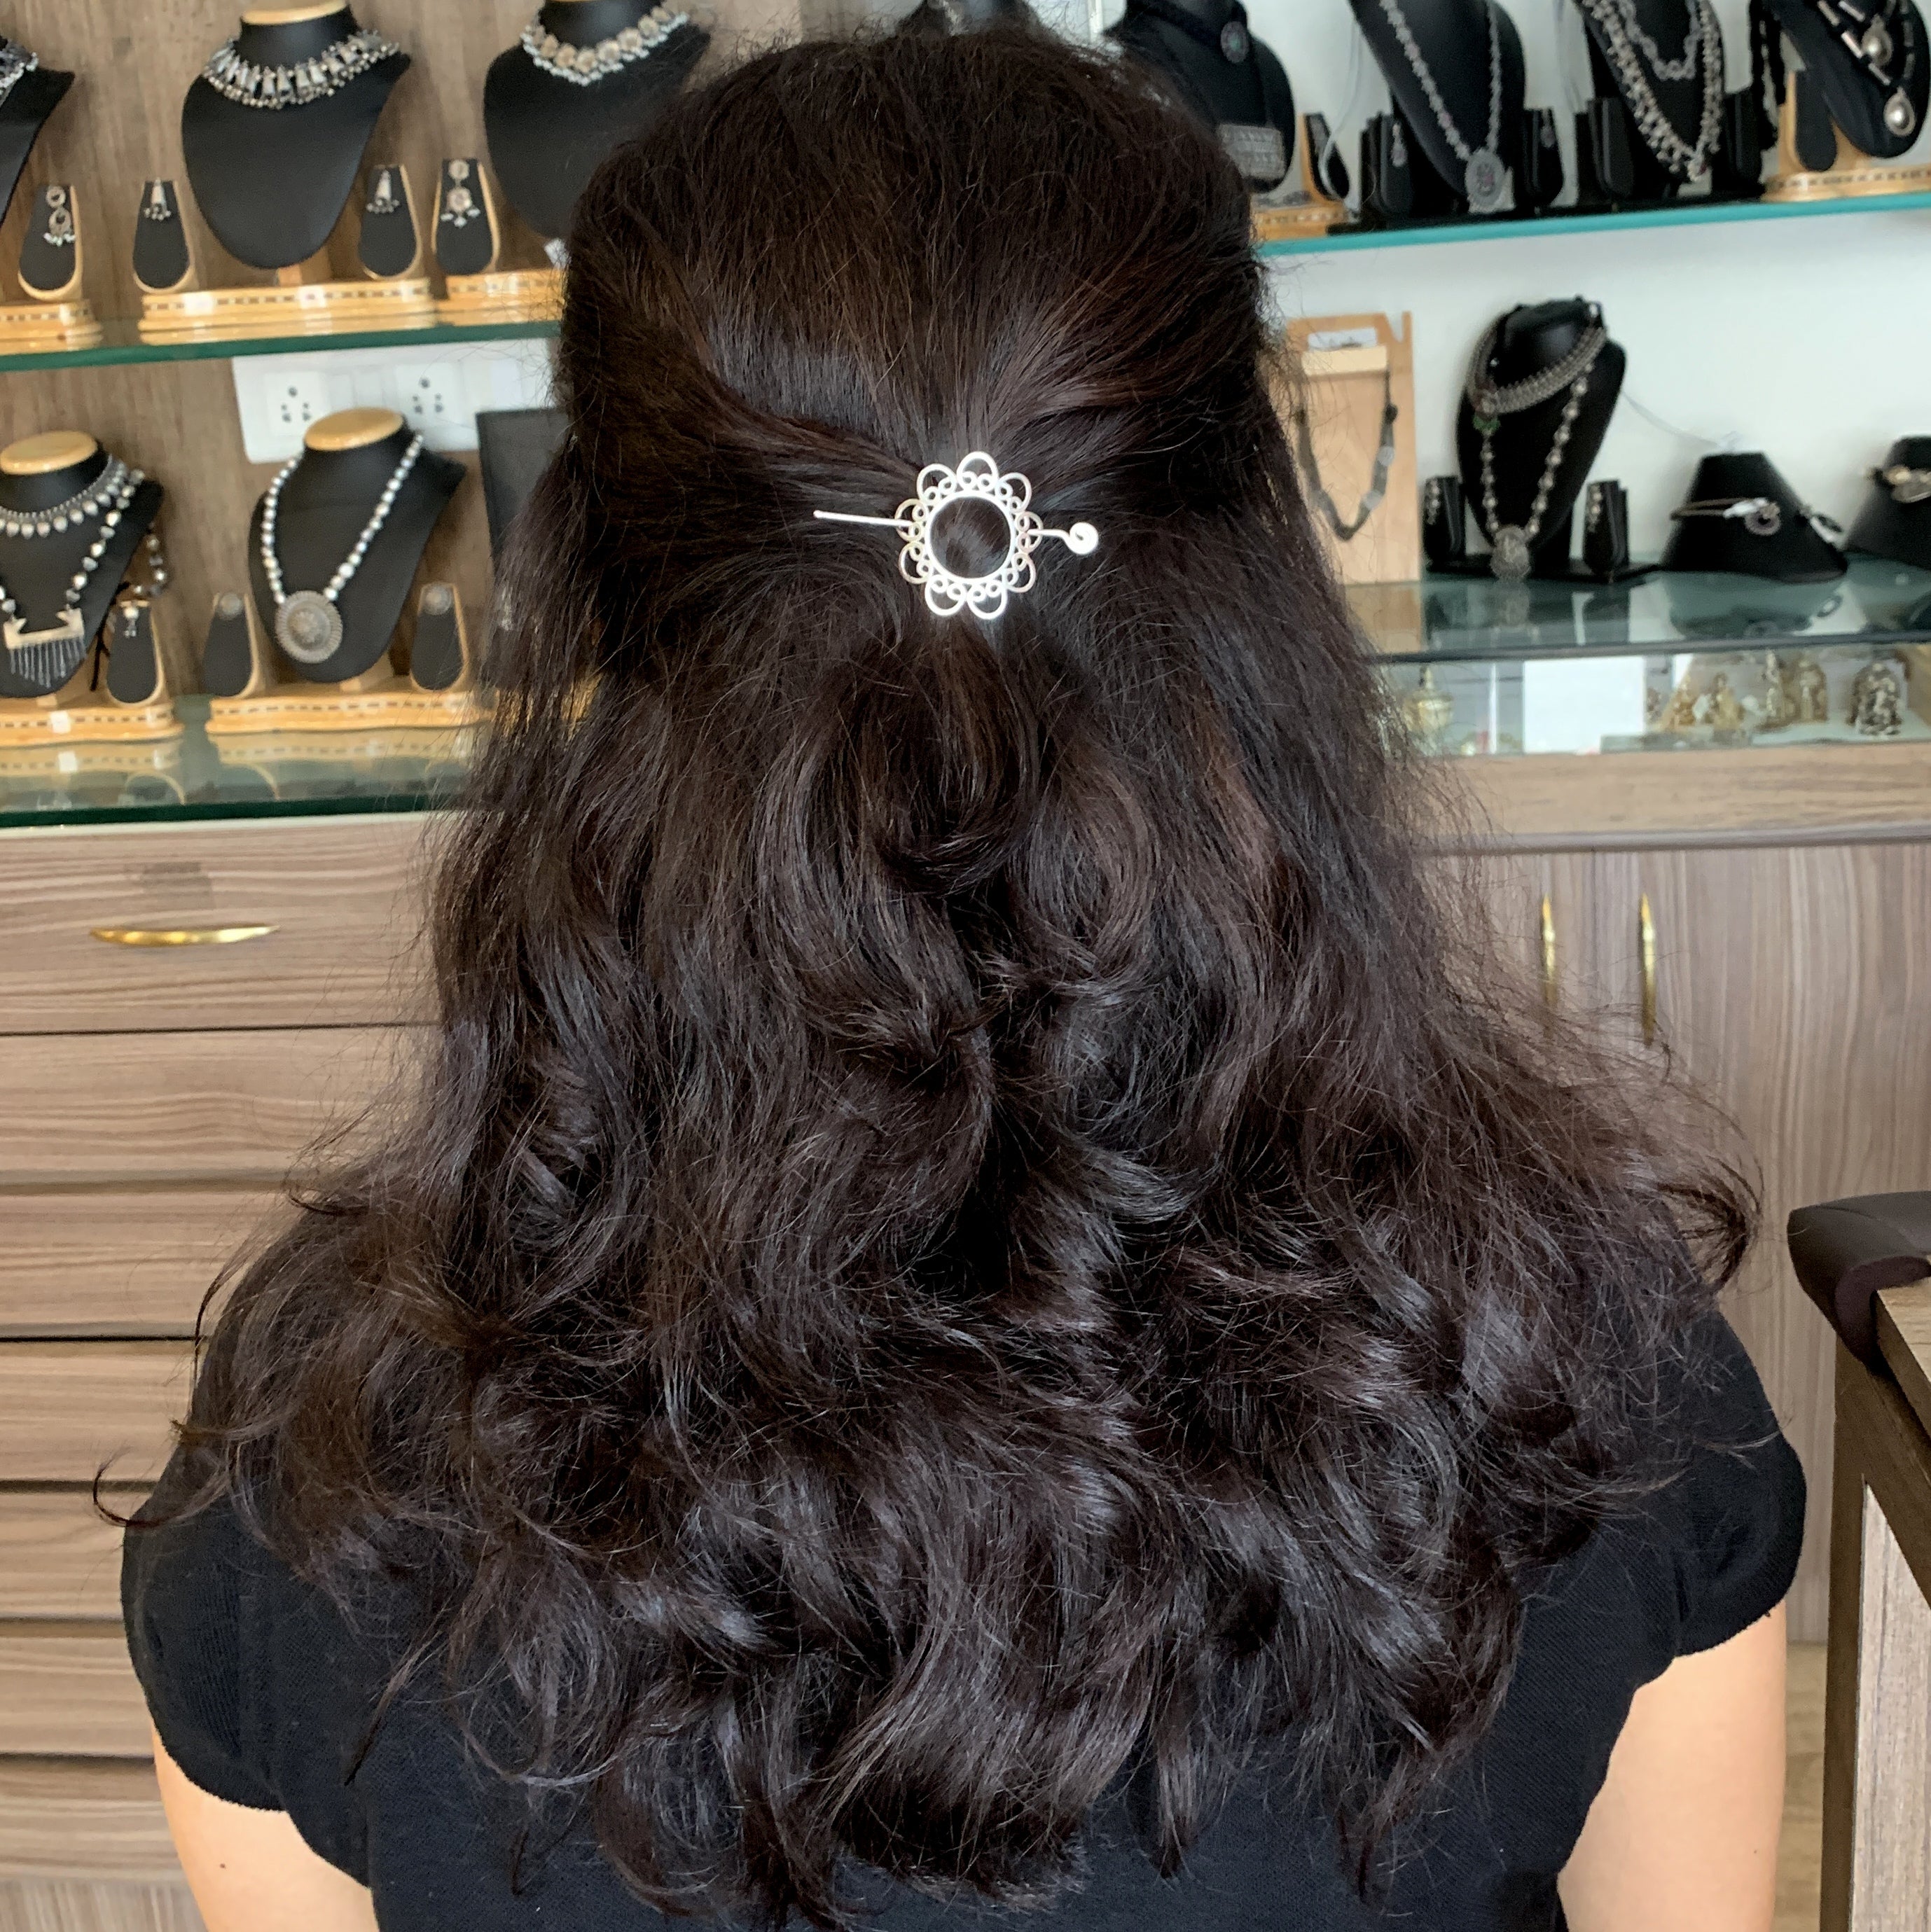 a woman with long dark hair wearing a hair clip